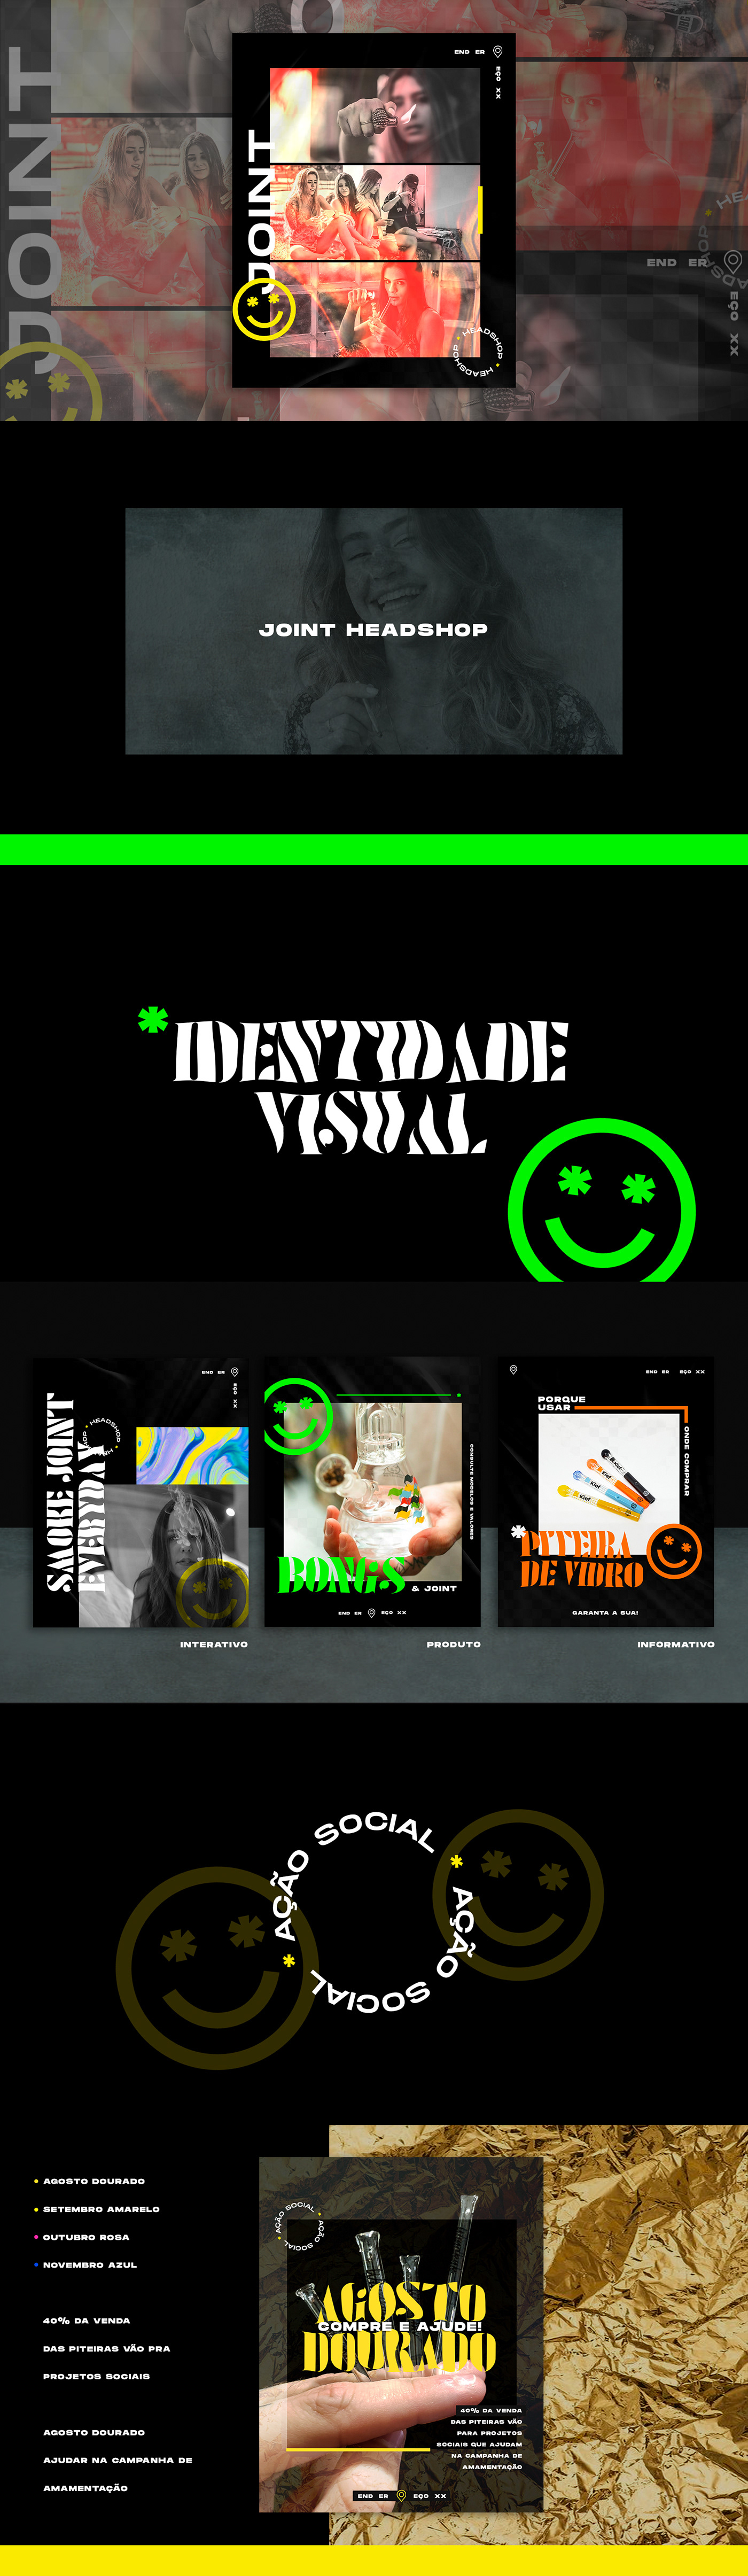 design Headshop identidade visual tabacaria